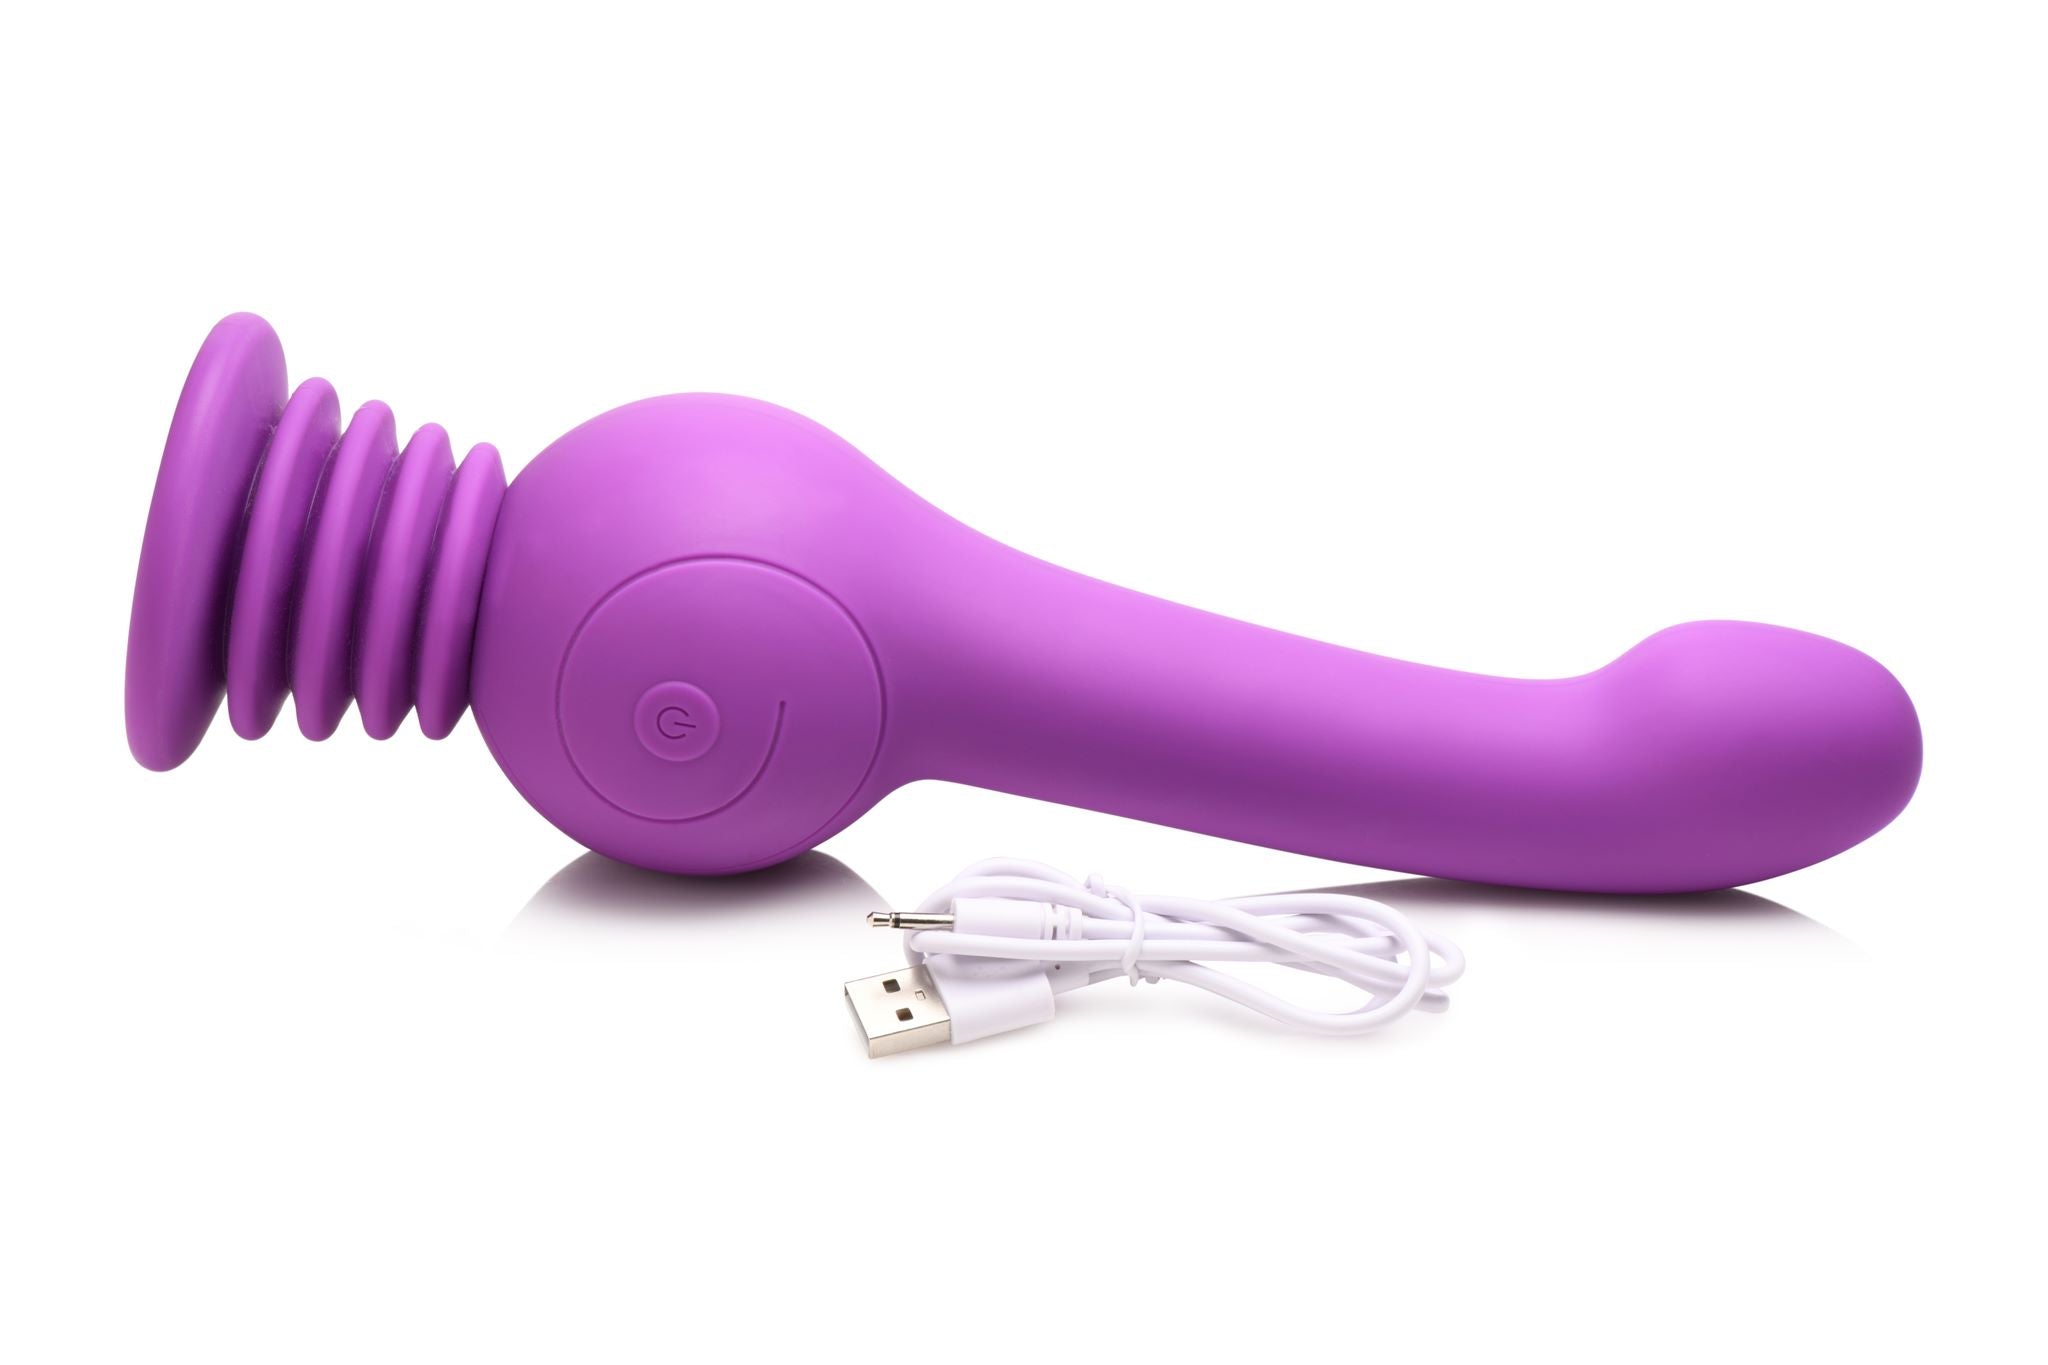 Inmi Sex Shaker Silicone Stimulator Purple